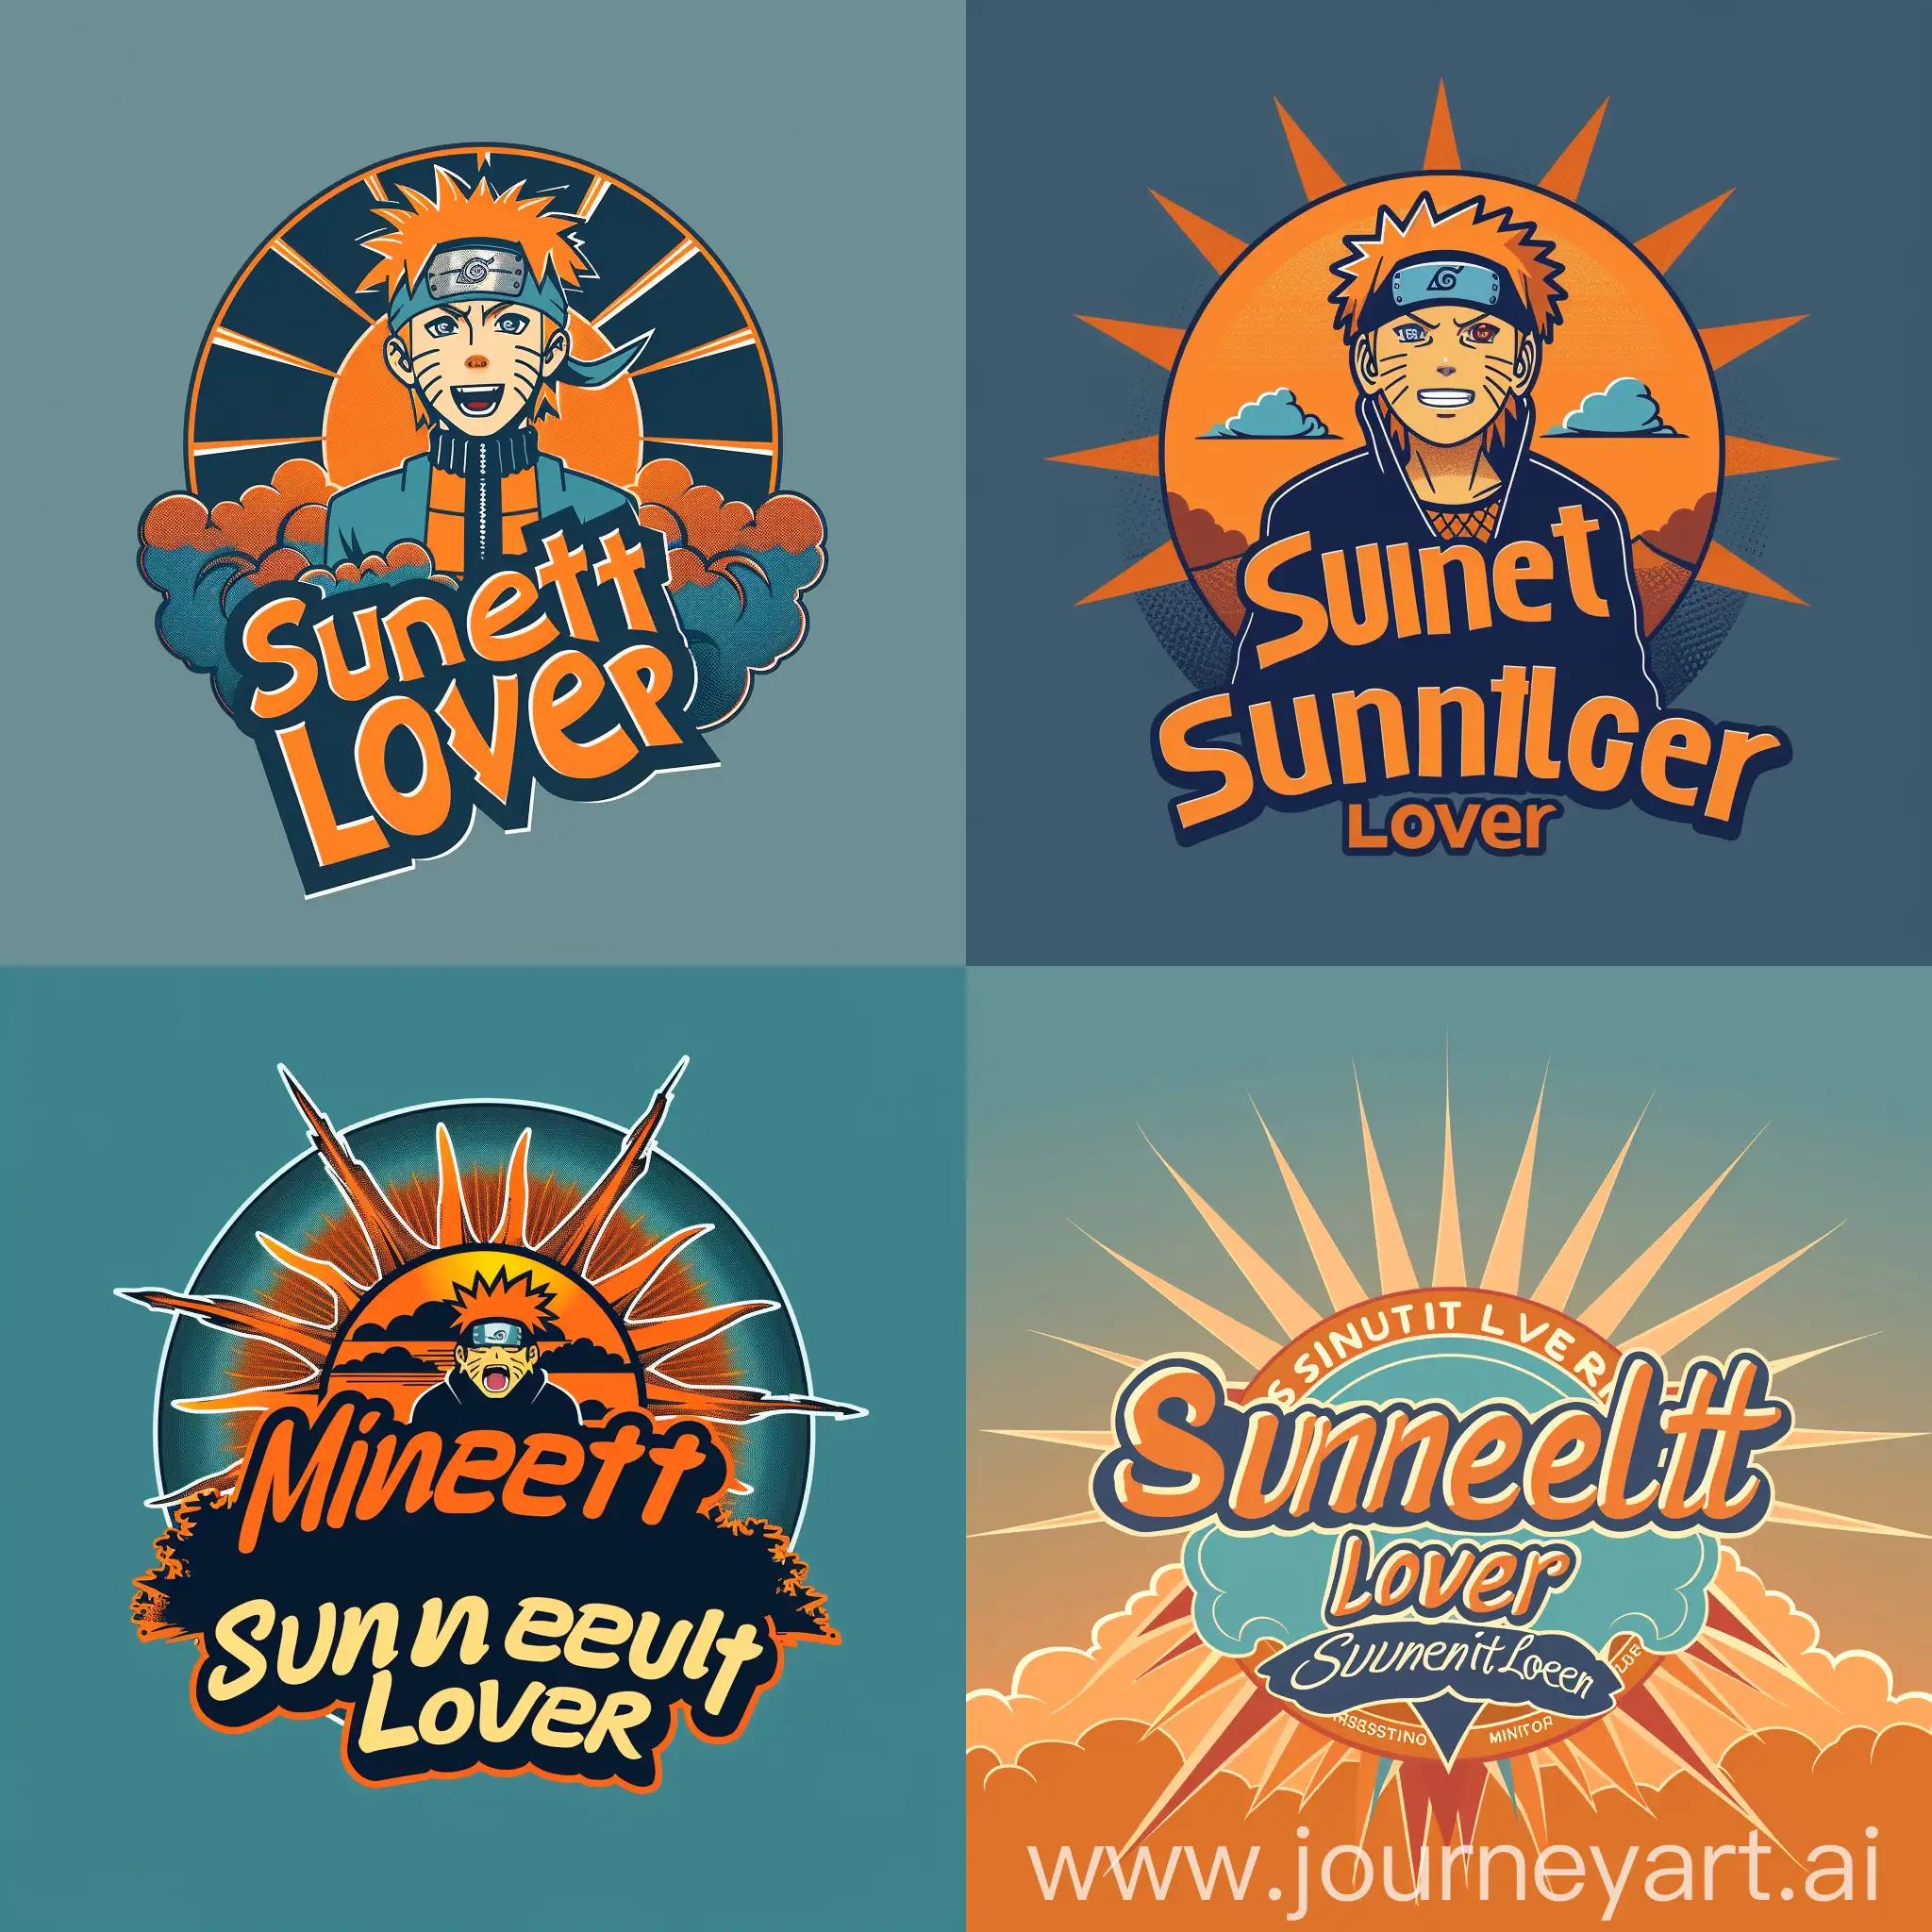 Логотип со словами "Sunset Lover" связанный с Минато, закат на фоне, закат символизирует время когда Минато использовал свои способности с помощью техники Rasengan, лучи солнца, цветовая палитра логотипа "Sunset Lover" оранжевые и голубые оттенки, которые напоминают о закате и небесах